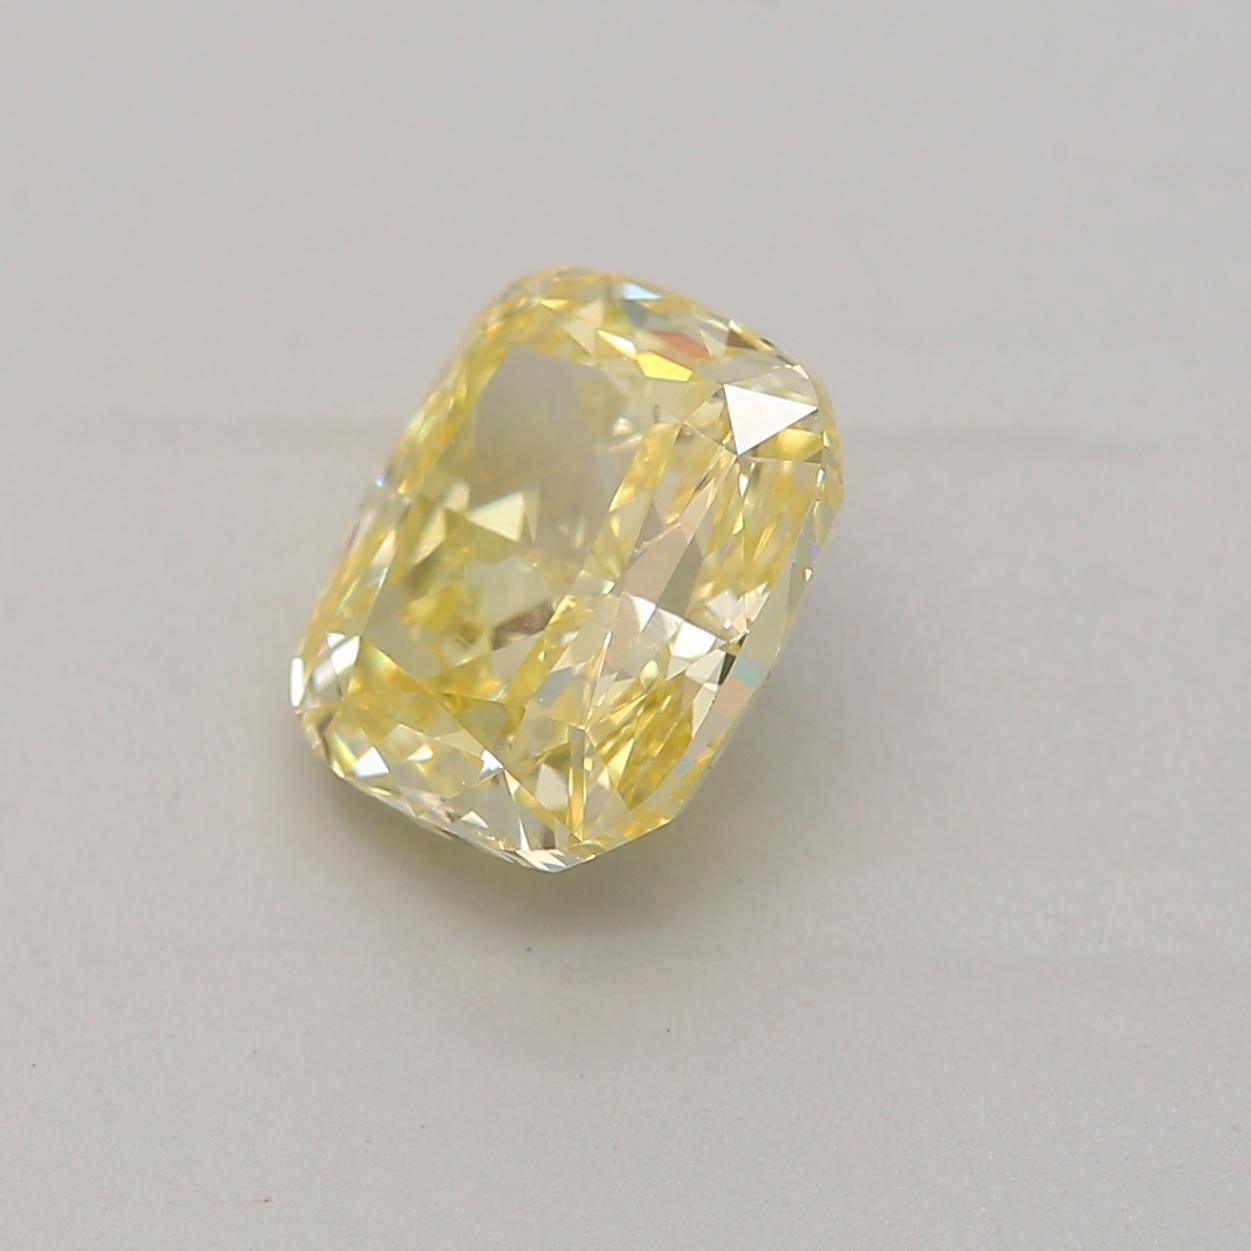 1 carat yellow diamond price